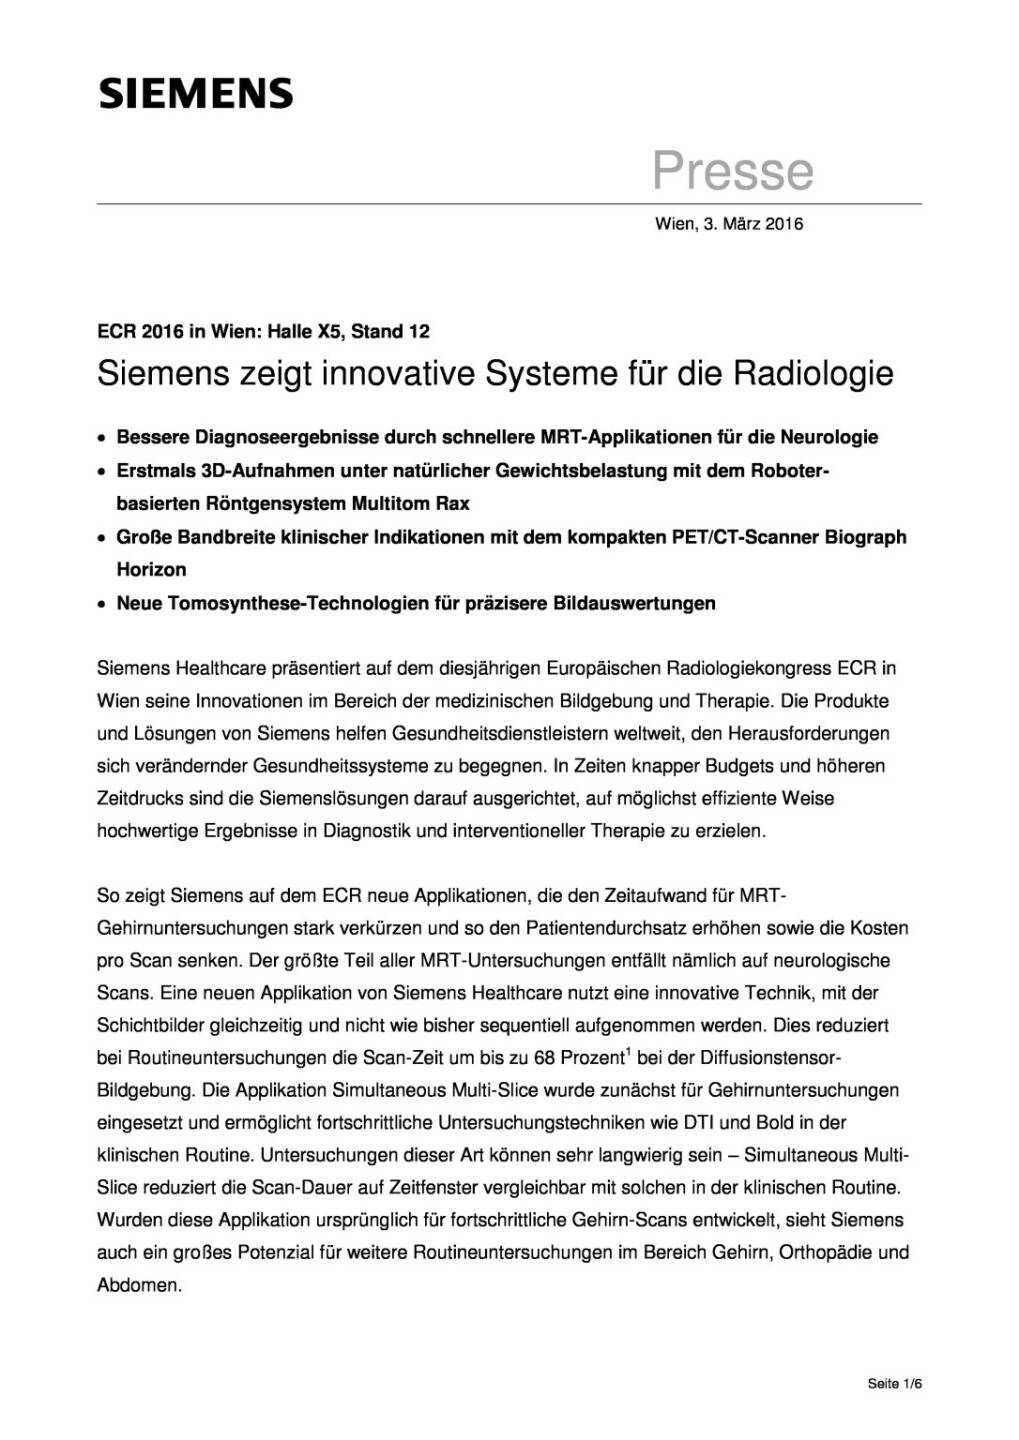 Siemens zeigt innovative Systeme für die Radiologie, Seite 1/6, komplettes Dokument unter http://boerse-social.com/static/uploads/file_719_siemens_zeigt_innovative_systeme_fur_die_radiologie.pdf